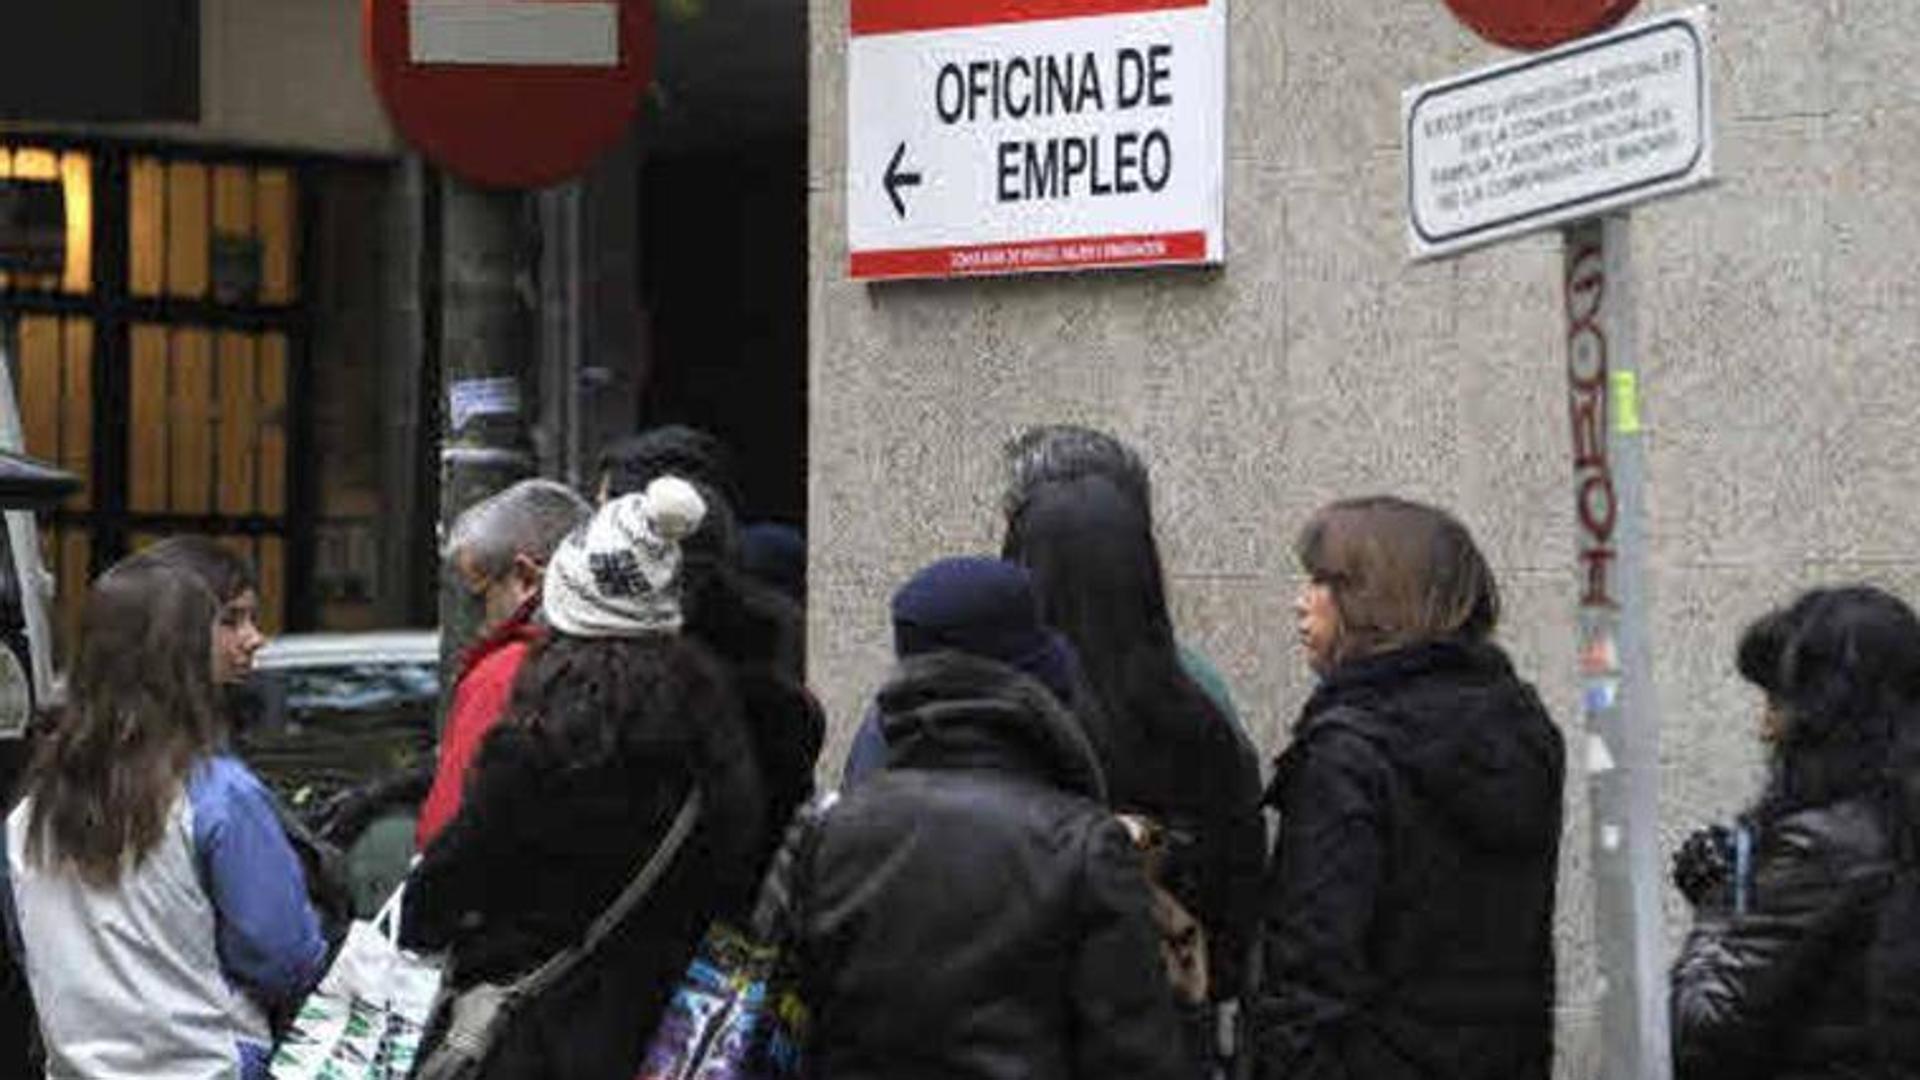 Spain reaches 20.89 million affiliates but job creation stops dead